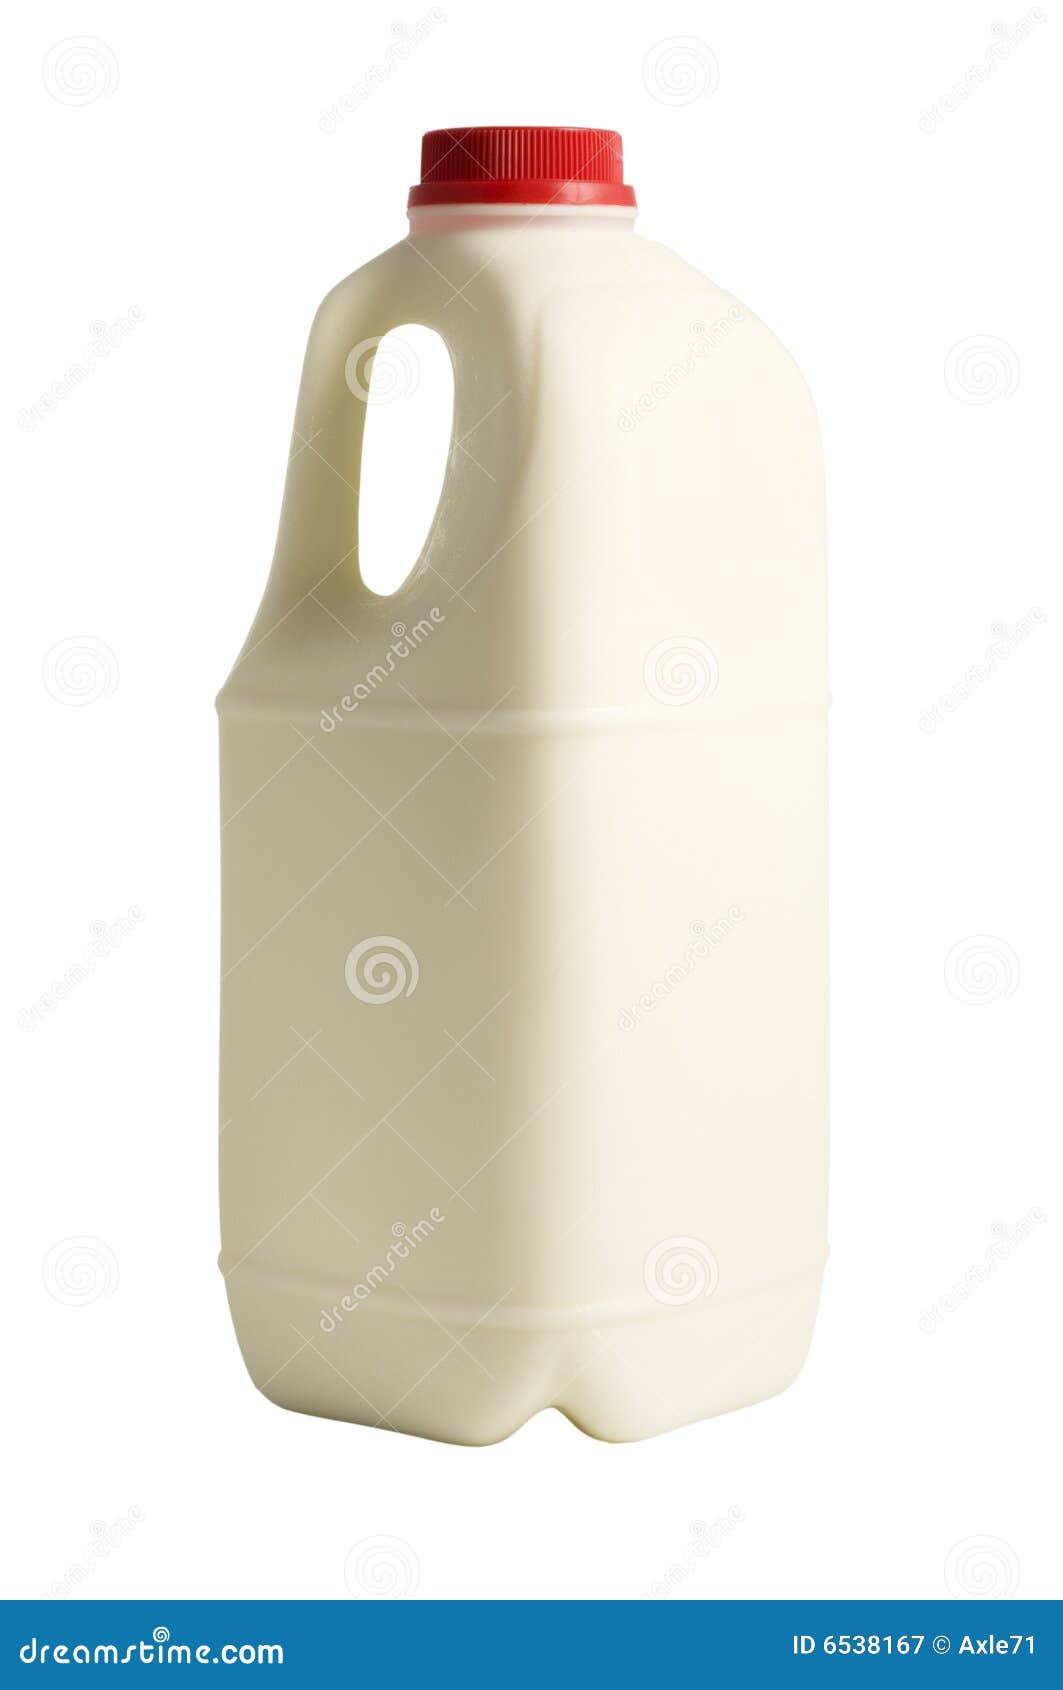 Dos litros de leche imagen de archivo. Imagen de bebida - 6538167